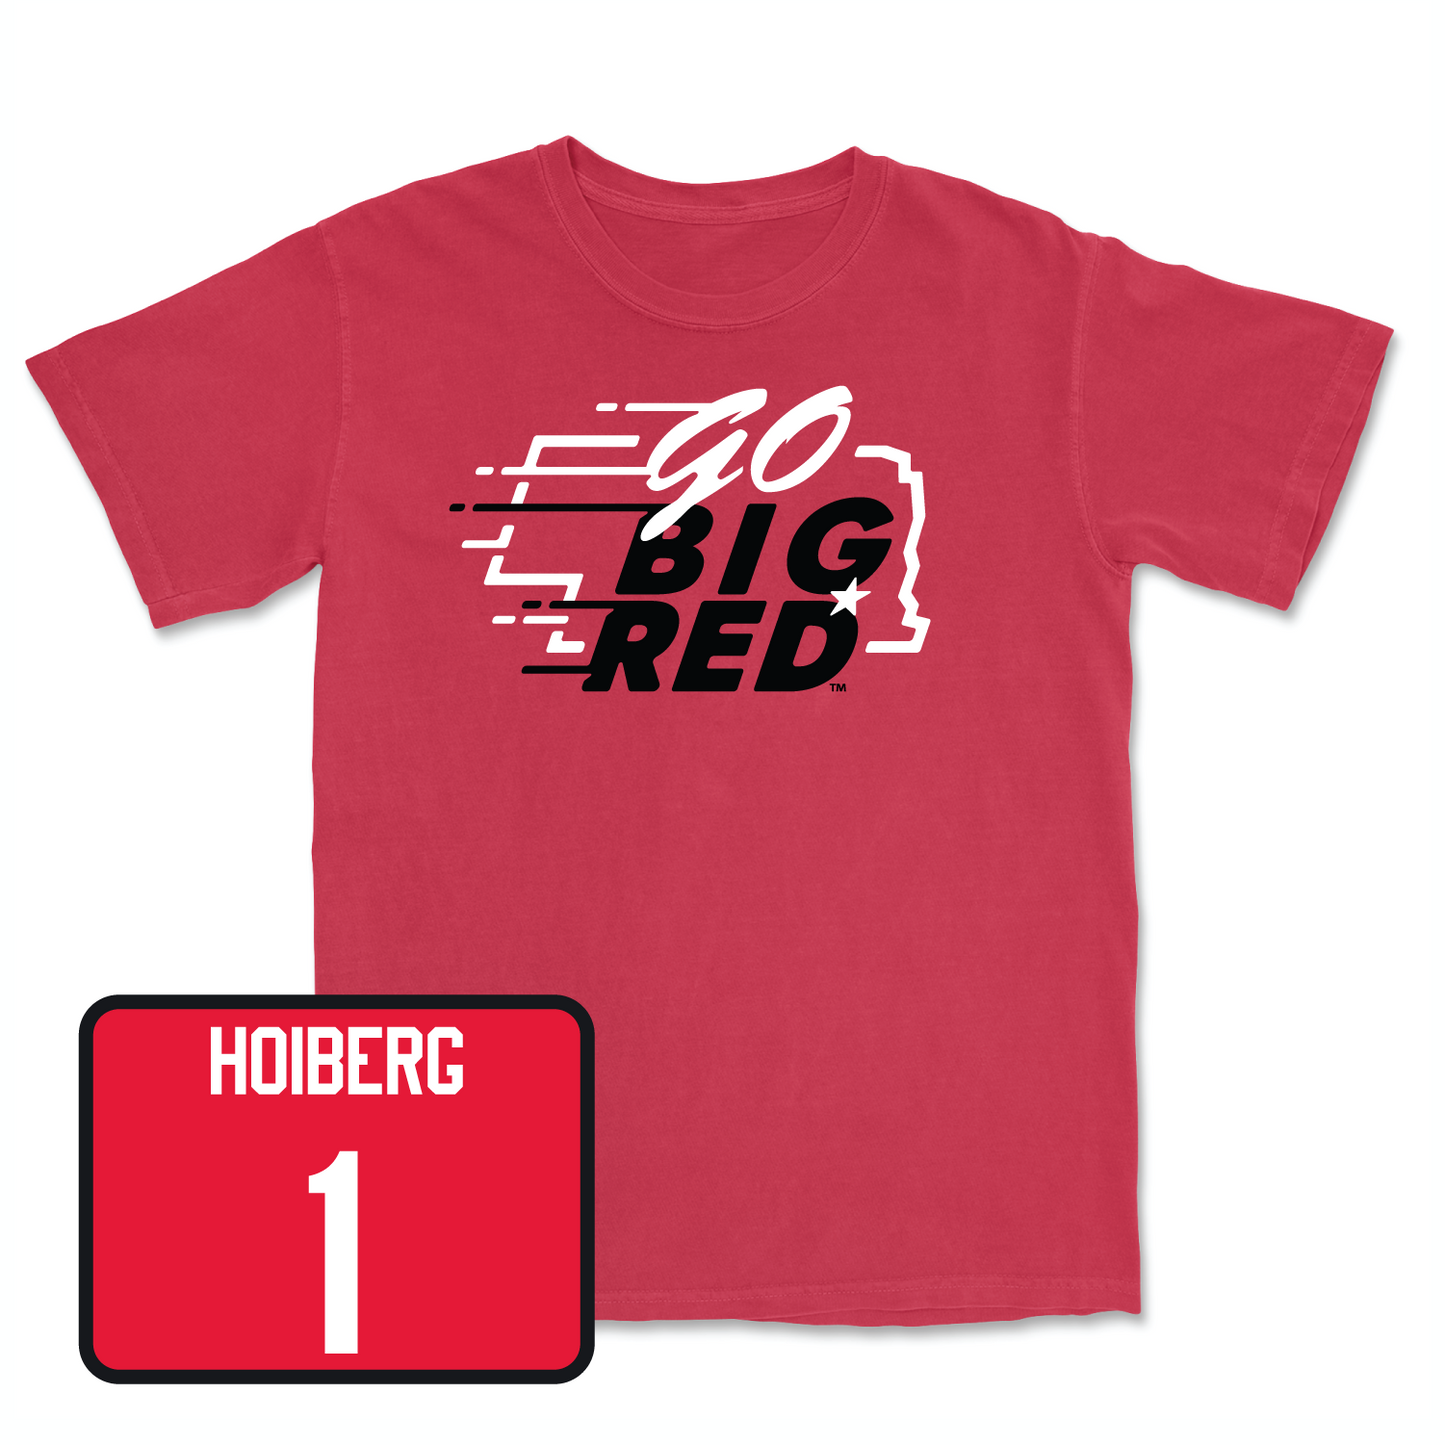 Red Men's Basketball GBR Tee Small / Samuel Hoiberg | #1